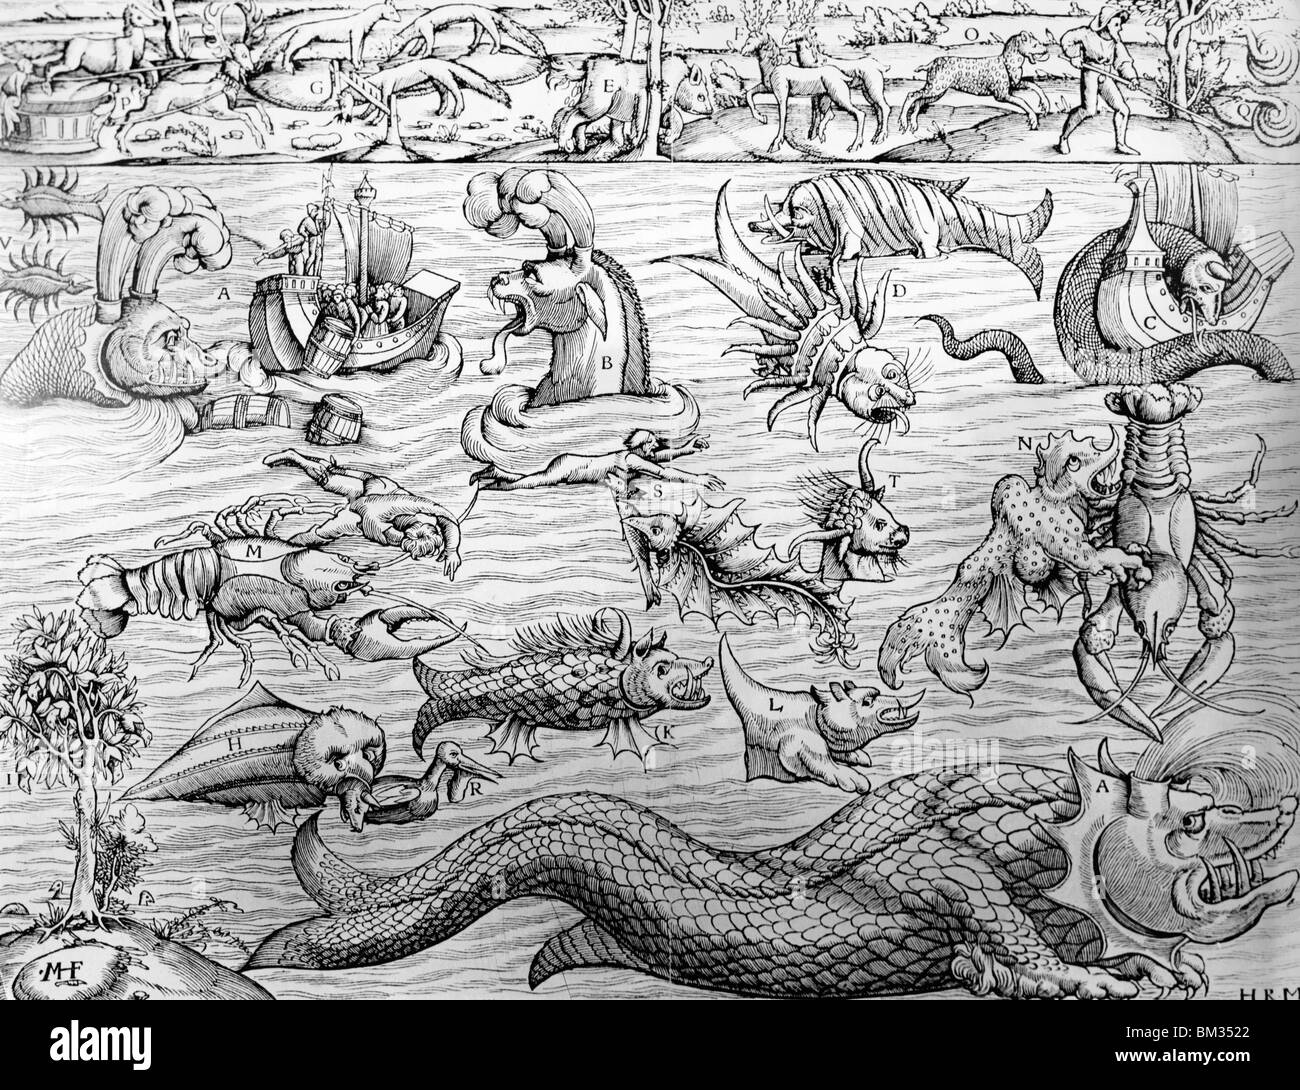 La nourriture pour la peur, les serpents de mer à l'enfer des bombes, des créatures mythologiques par peintre inconnu, artiste inconnu Banque D'Images